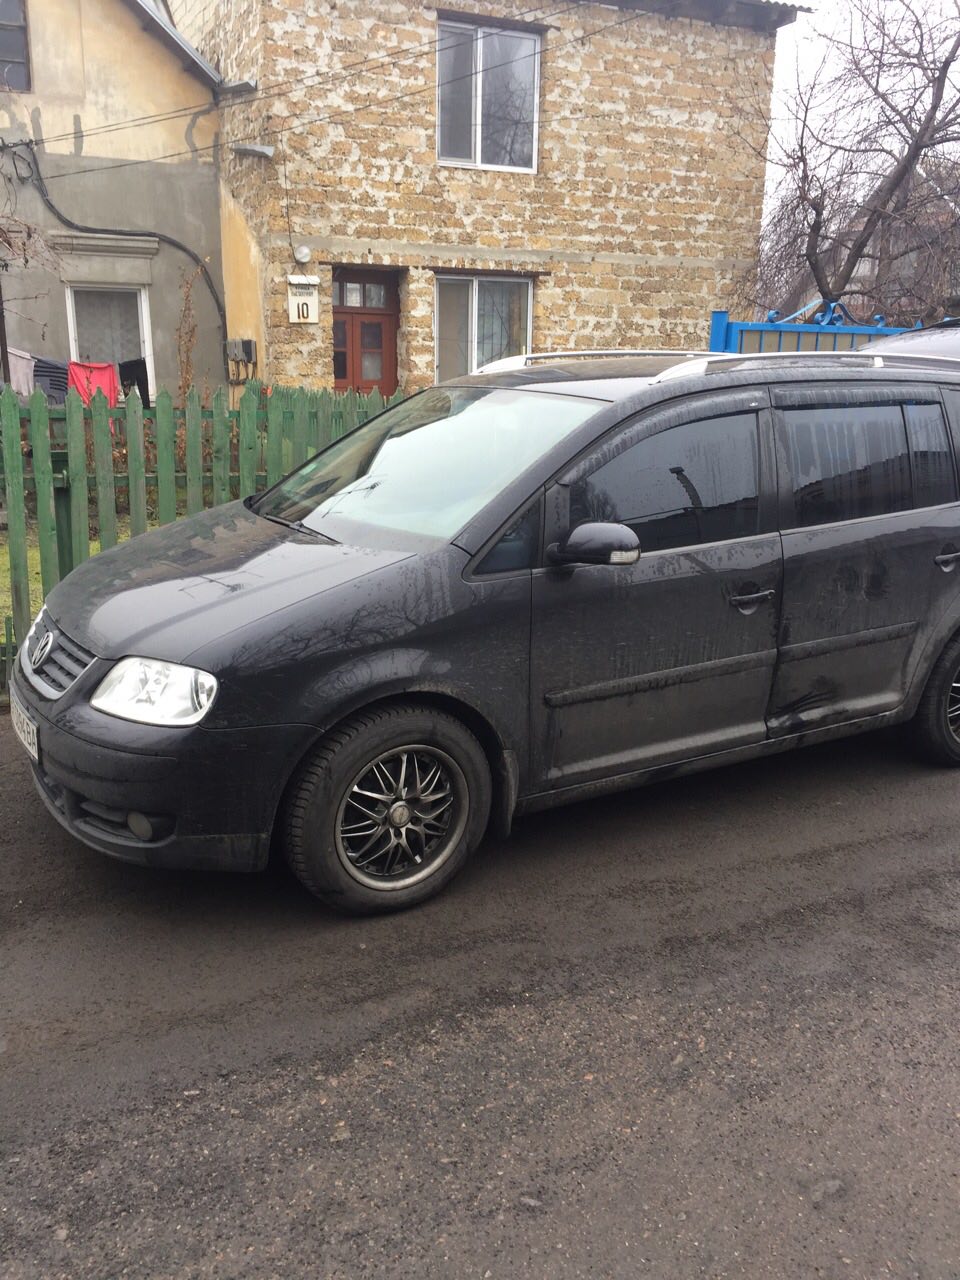 Báo động tình trạng trộm, cướp giật lộng hành tại Odessa